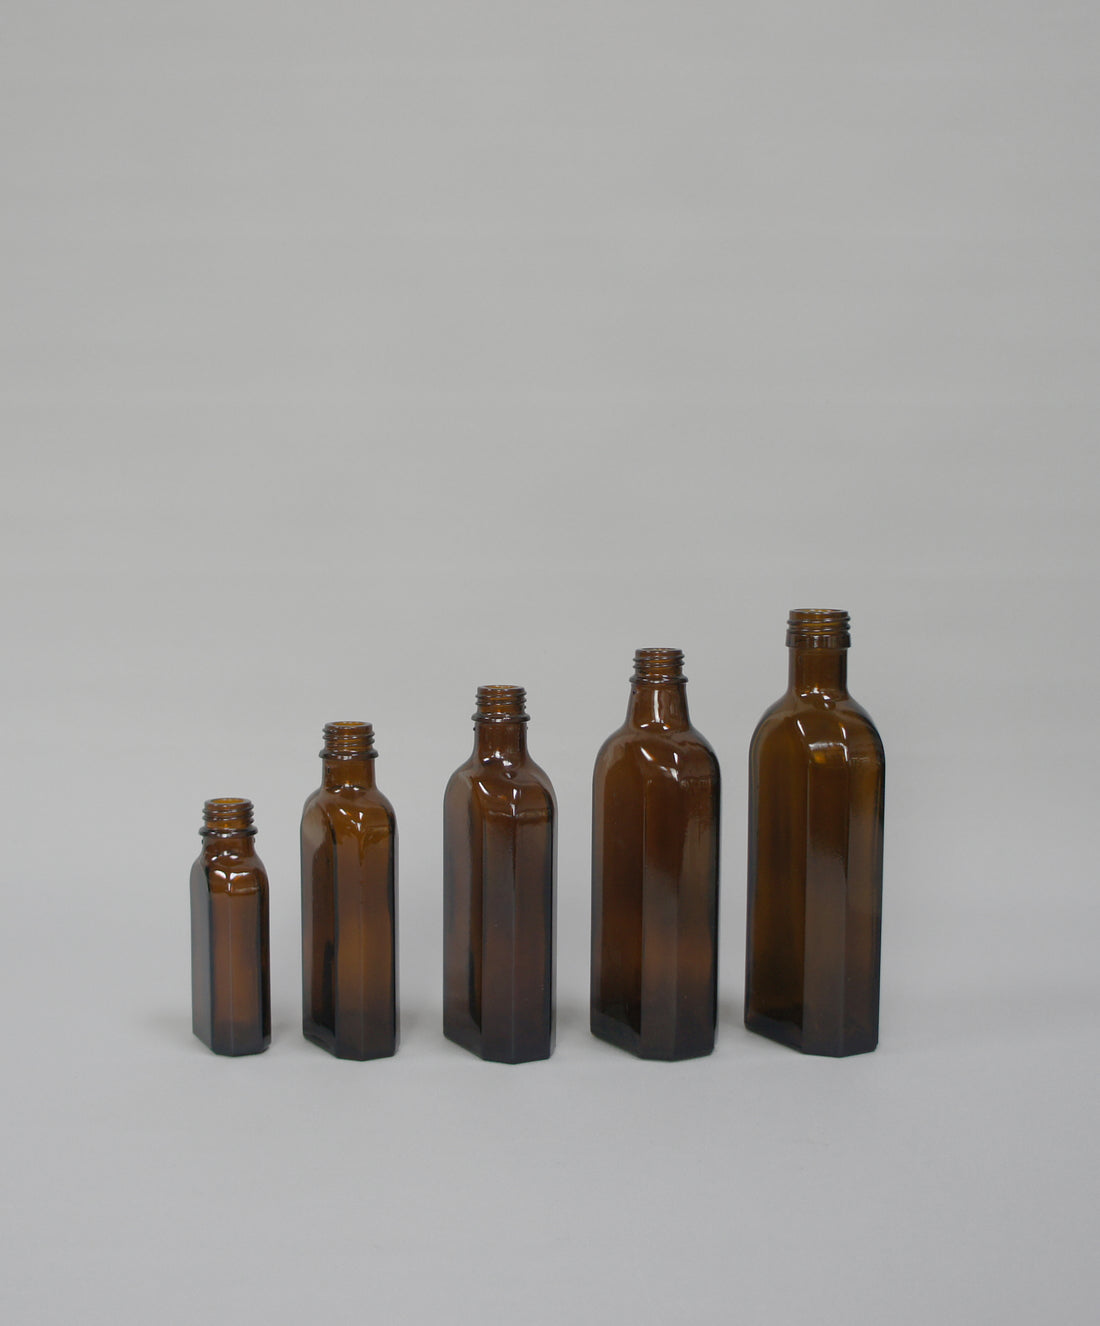 Apothekerflasche, Farbe Braun, flach Ausführung, in 5 Größen erhältlich